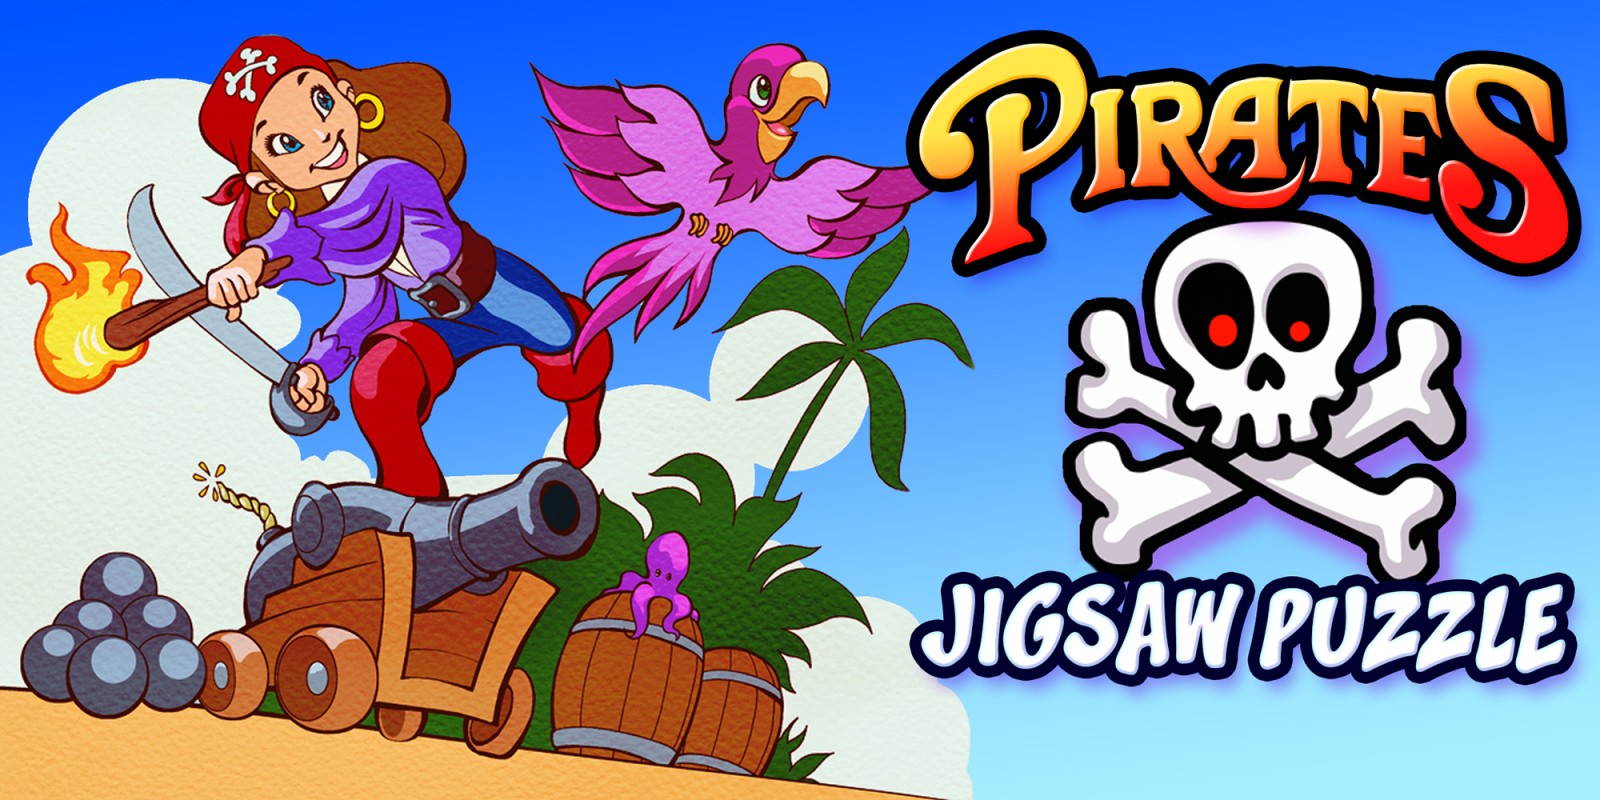 Pirates Jigsaw Puzzle - pirates puzzle éducation aventure apprentissage enfants puzzles jeux pour enfants et tout-petits